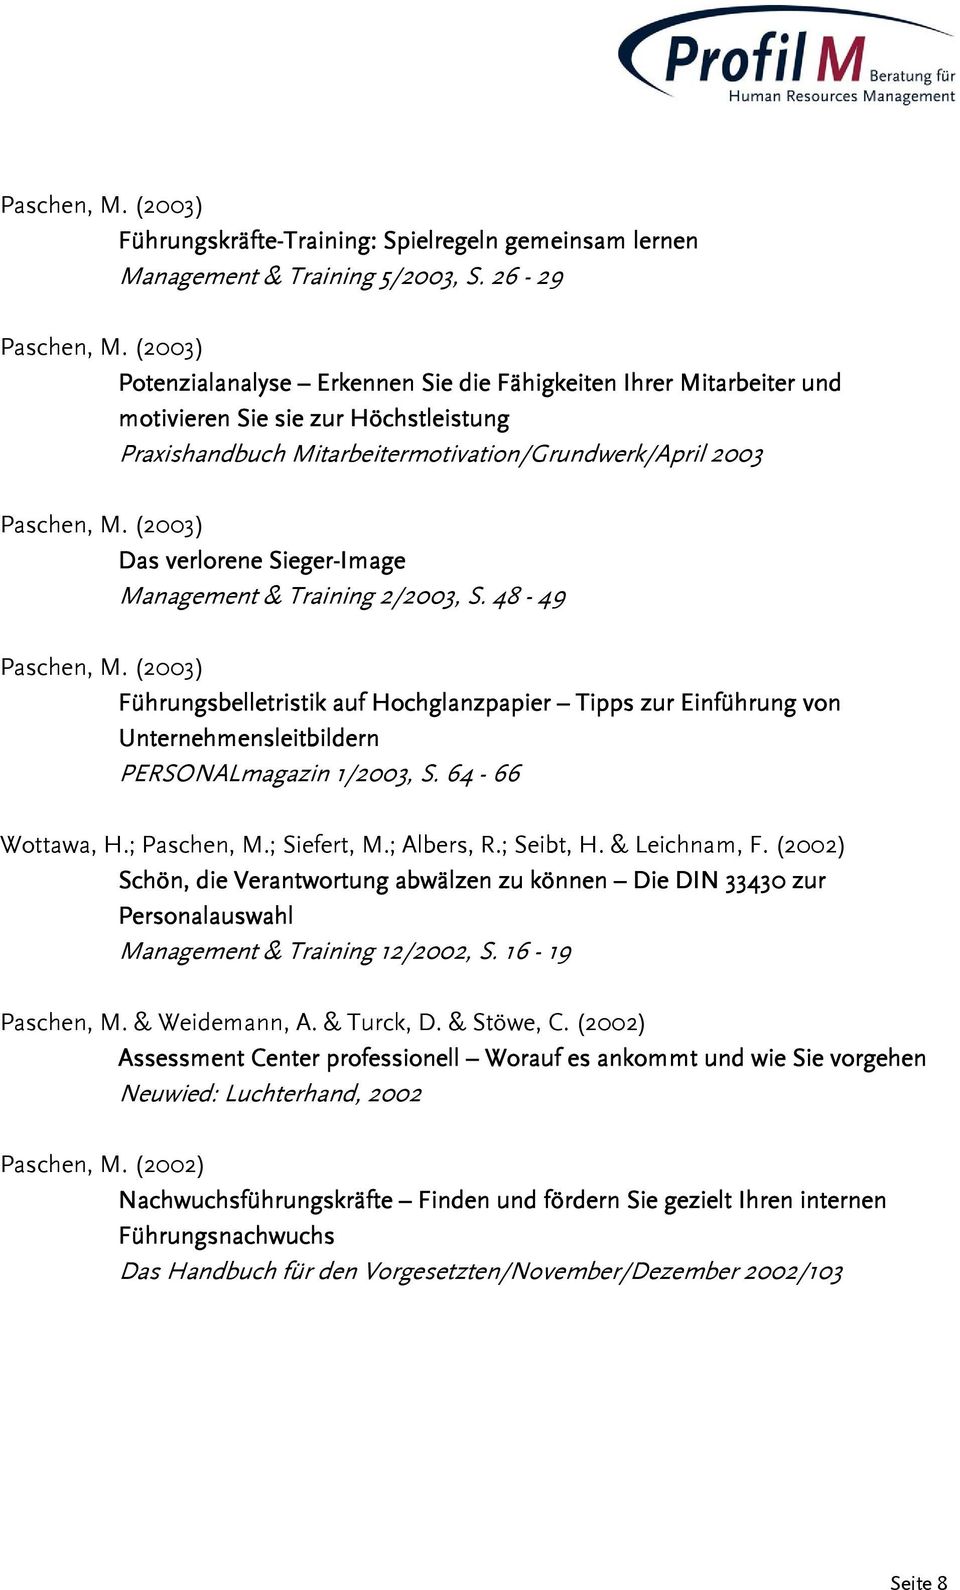 Management & Training 2/2003, S. 48-49 Führungsbelletristik auf Hochglanzpapier Tipps zur Einführung von Unternehmensleitbildern PERSONALmagazin 1/2003, S. 64-66 Wottawa, H.; Paschen, M.; Siefert, M.